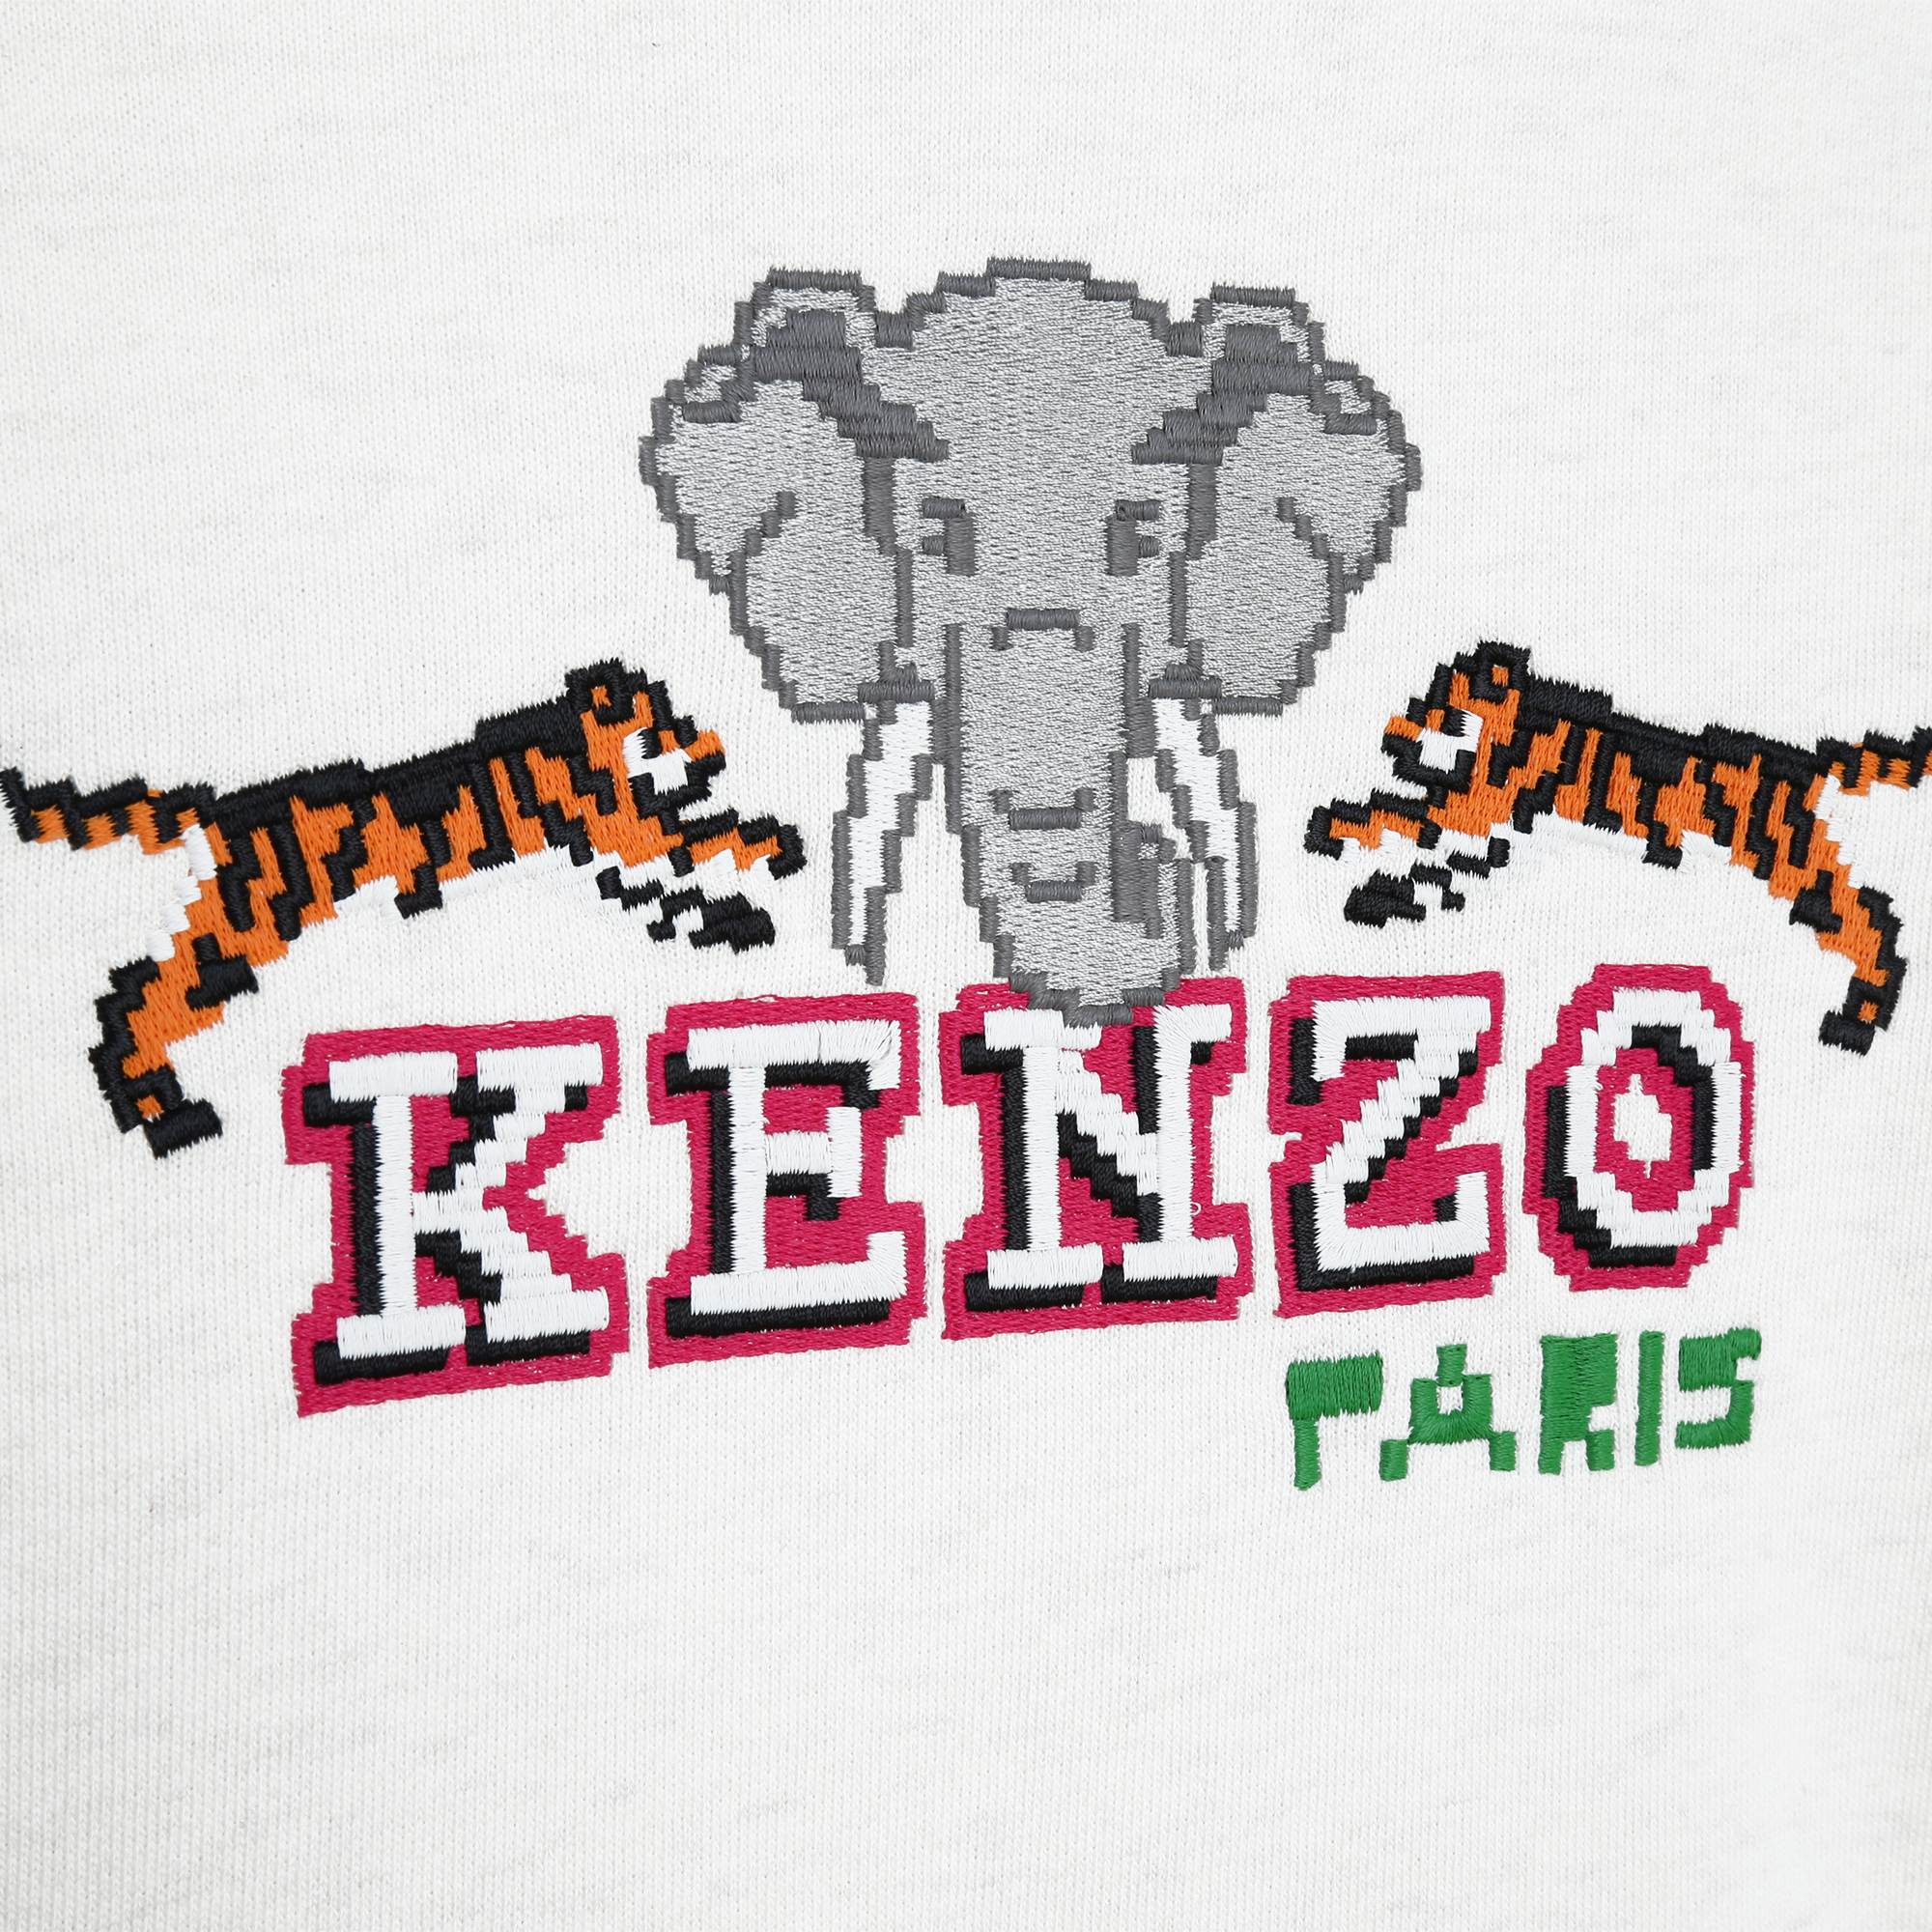 Embroidered zip-up sweatshirt KENZO KIDS for GIRL